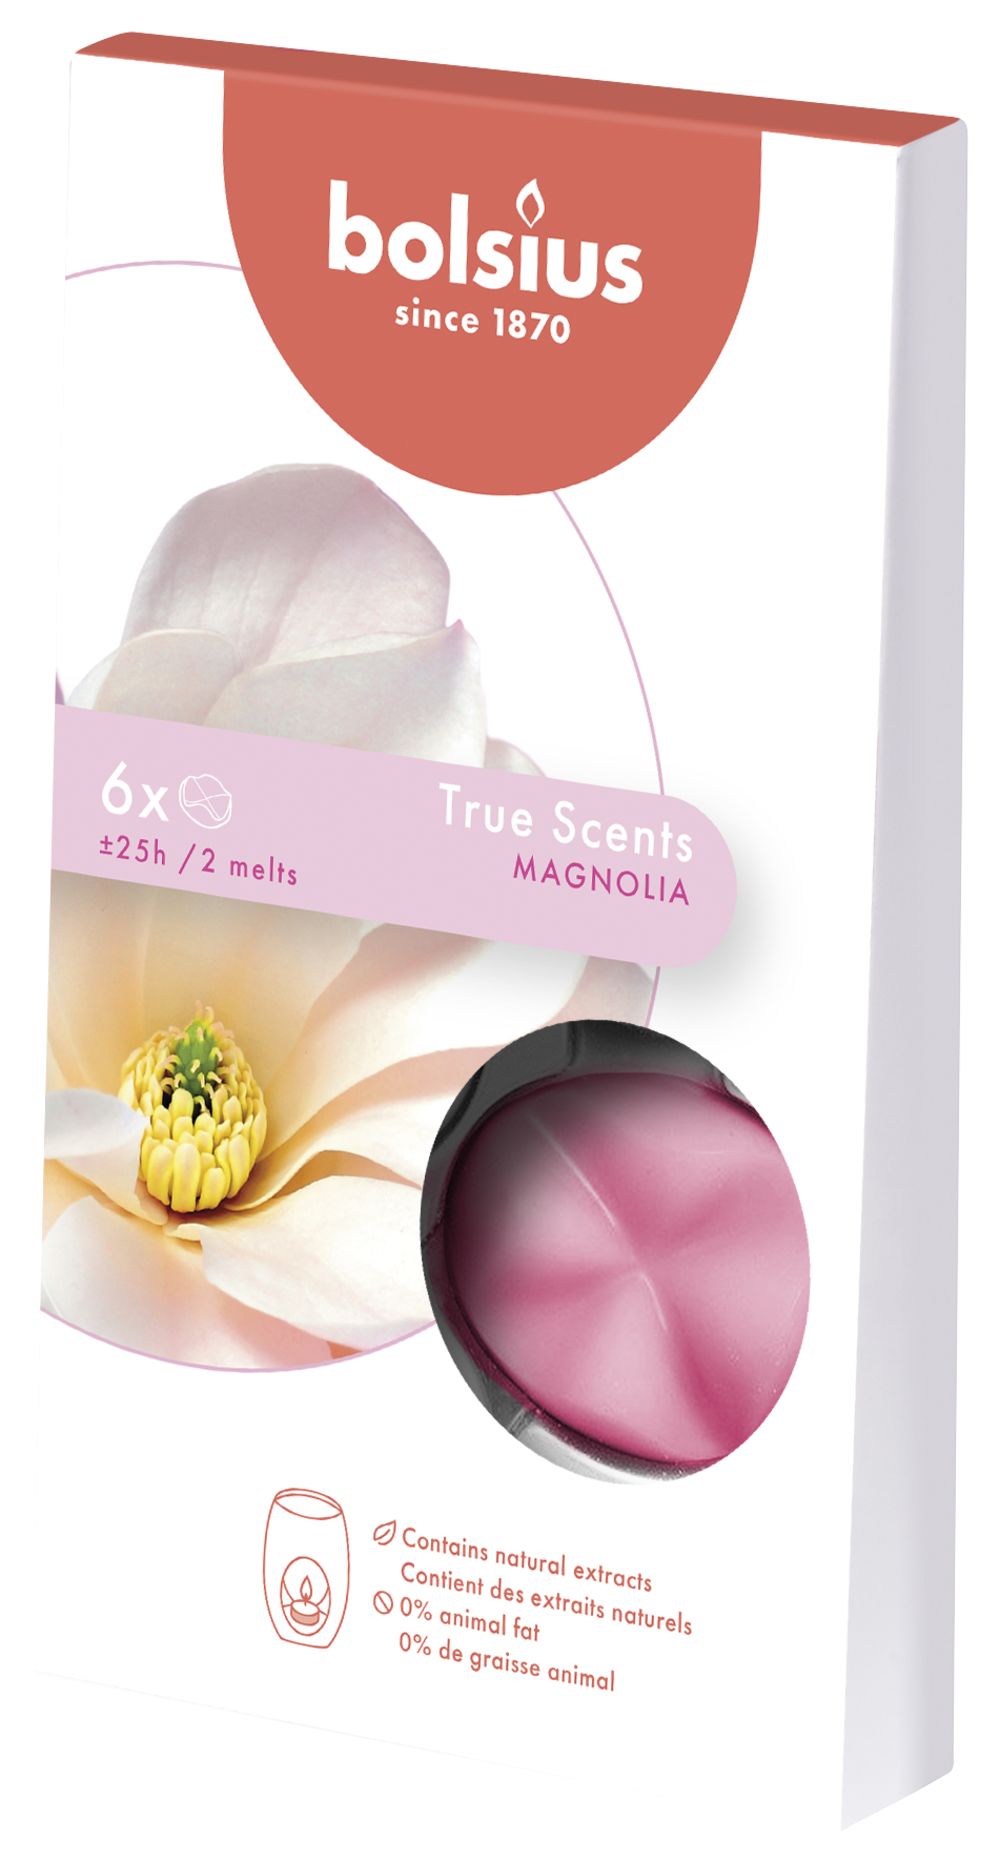 Netelig Meer dan wat dan ook uitglijden Bolsius Wax Melts True Scents Magnolia Kopen? | Cookinglife